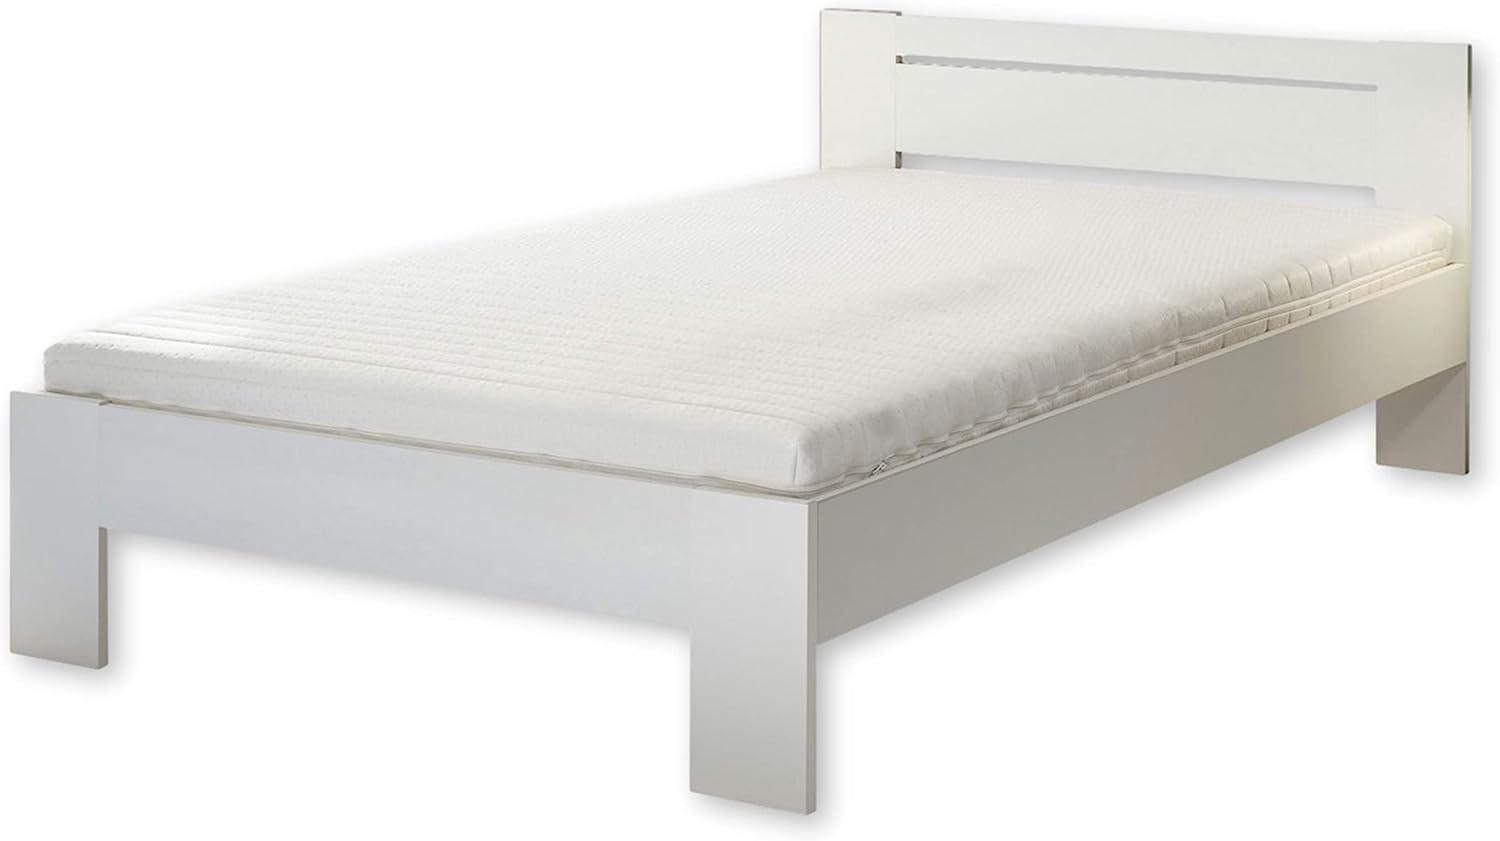 CANNES Futonbett 120 x 200 cm - Minimalistisches Jugendzimmer Bett in Weiß - 125 x 71 x 204 cm (B/H/T) Bild 1